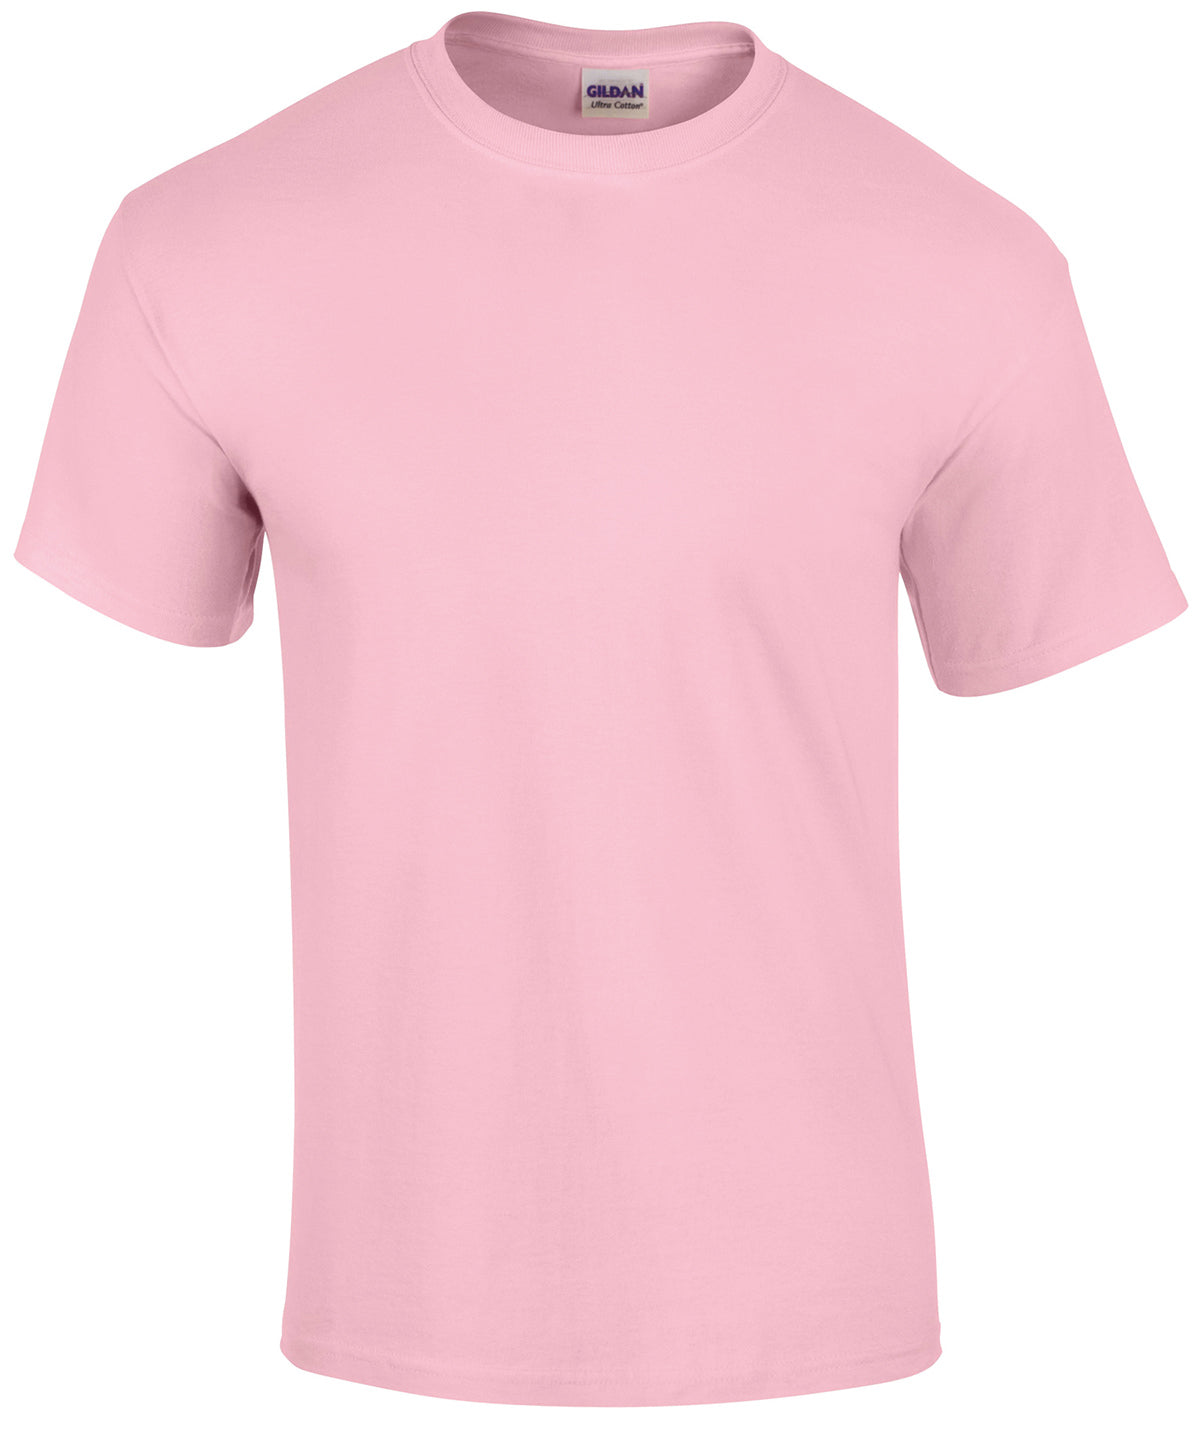 Gildan Ultra Cotton adult t-shirt Light Pink